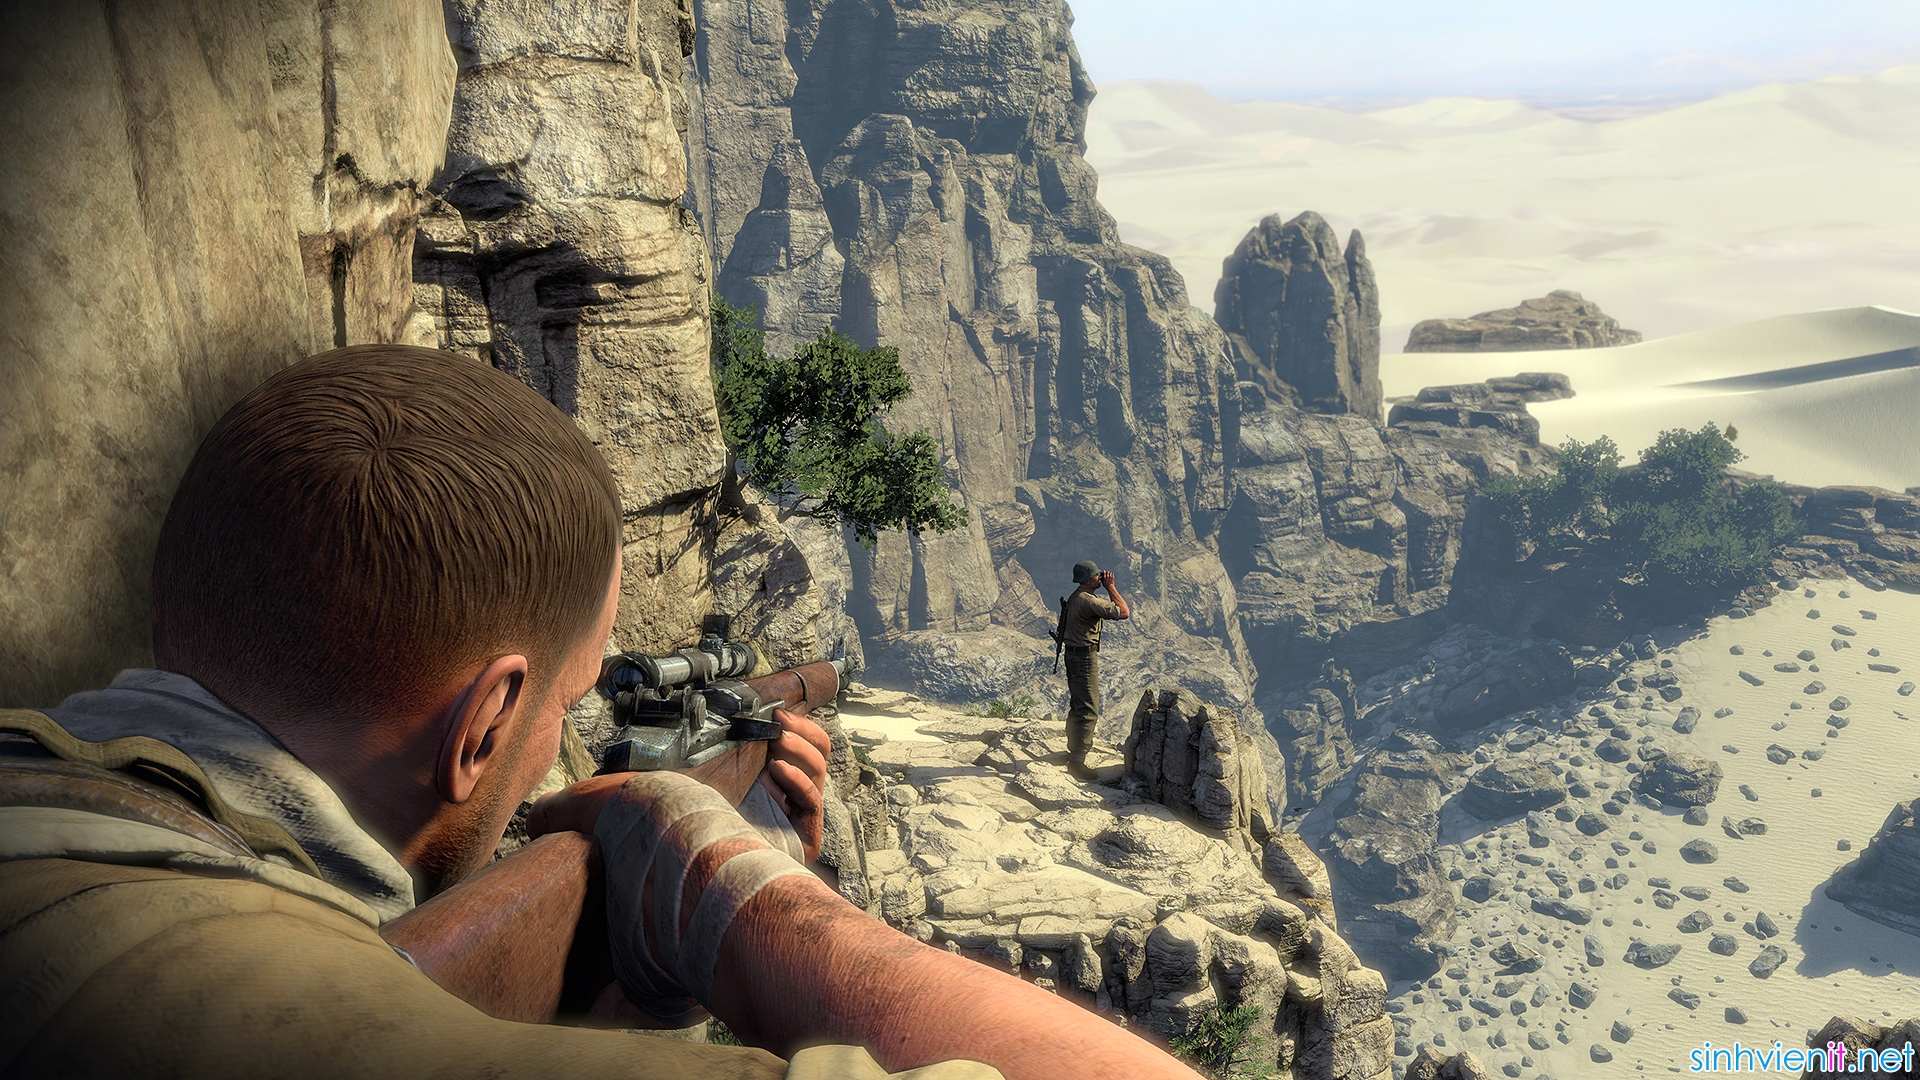 Sniper Elite 3: Tựa
game bắn tỉa trị giá 29,99 USD đang được miễn phí trên
GameSessions